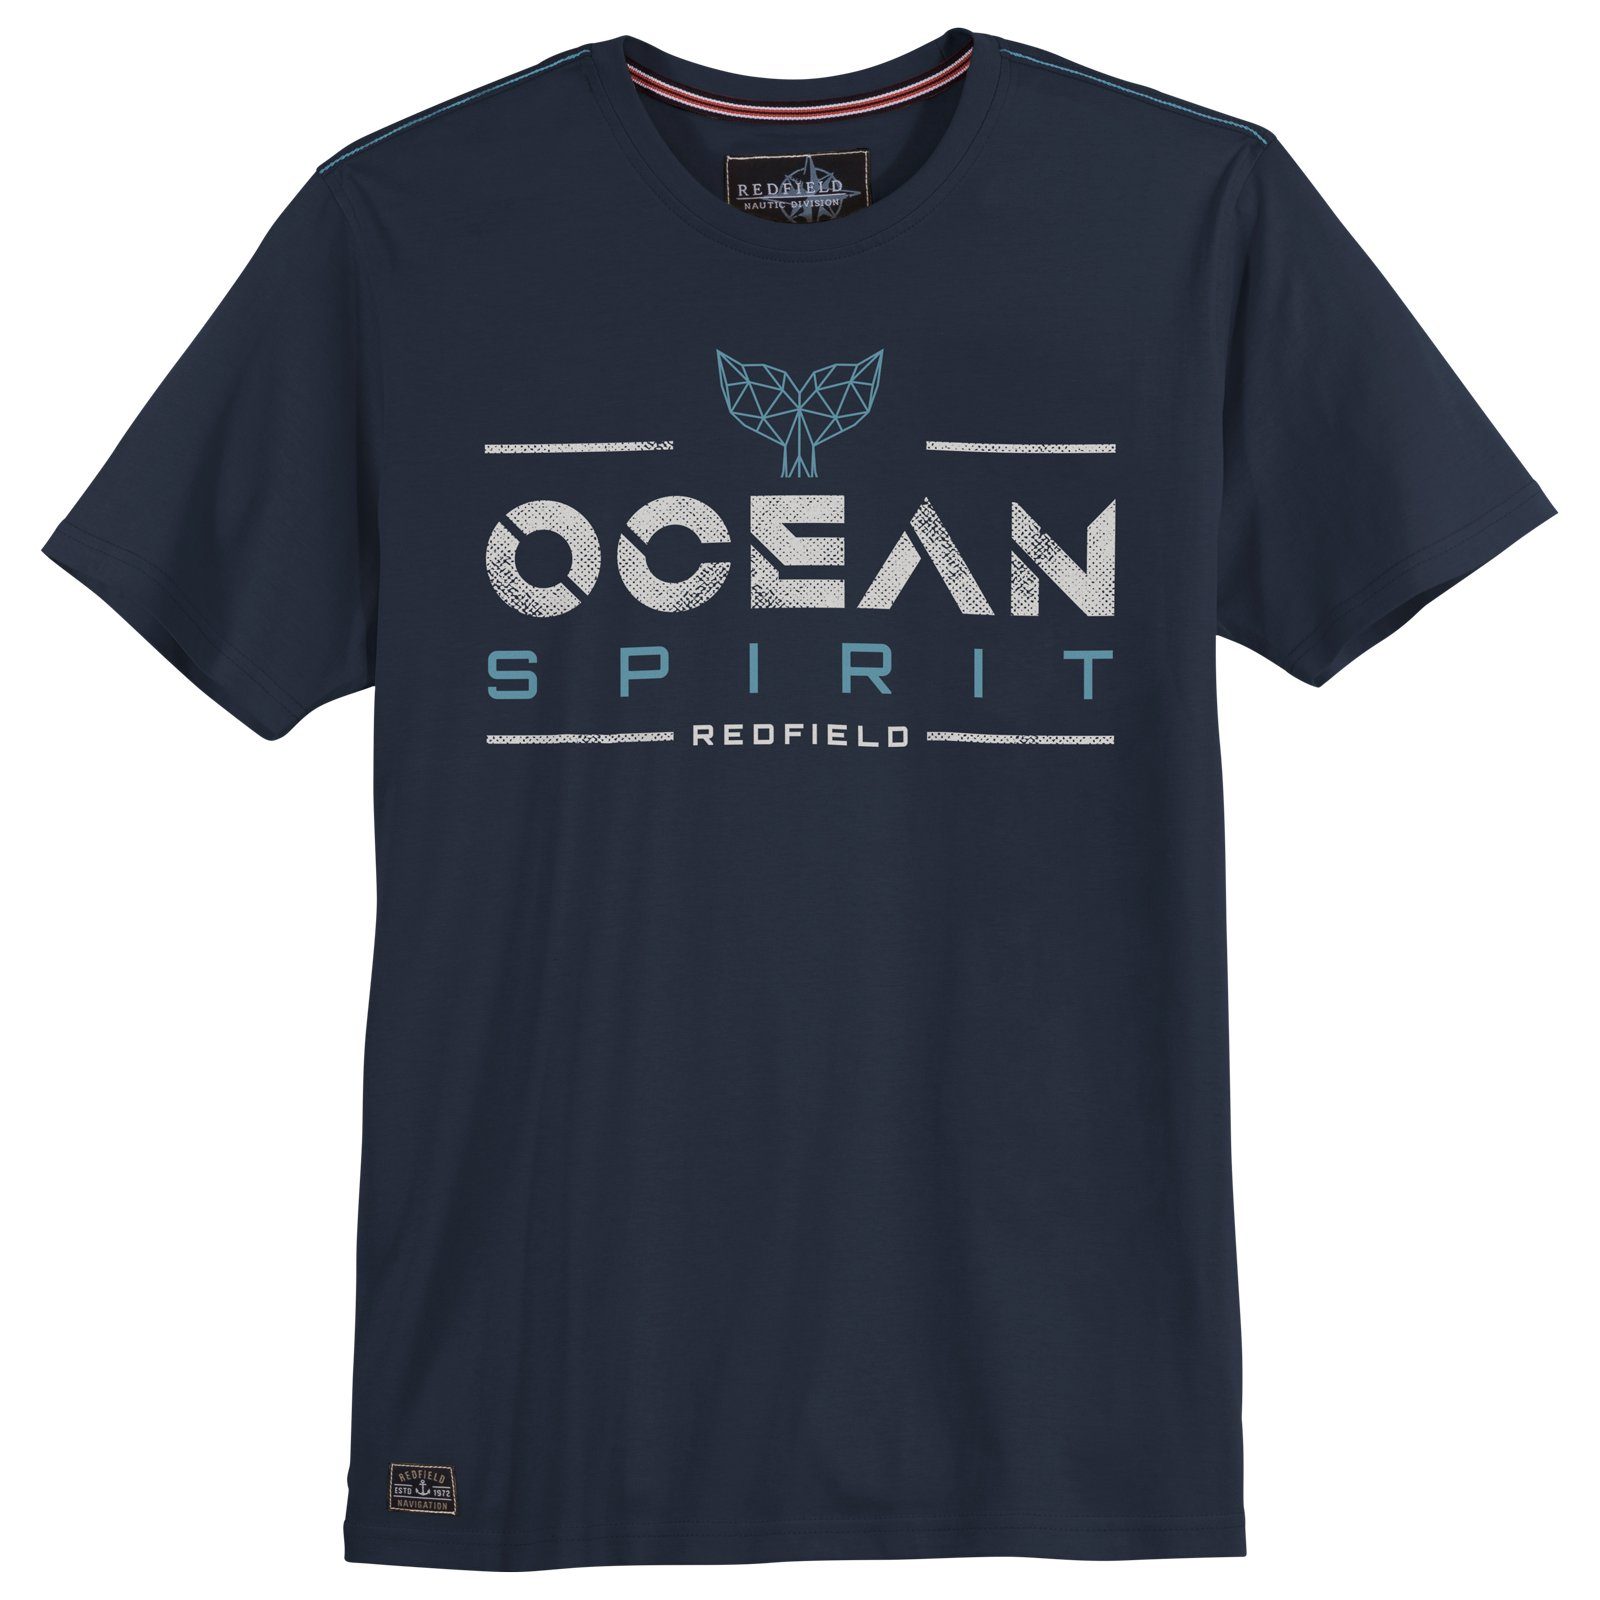 redfield Print Rundhalsshirt T-Shirt Größen Herren navy Große Redfield Spirit Ocean